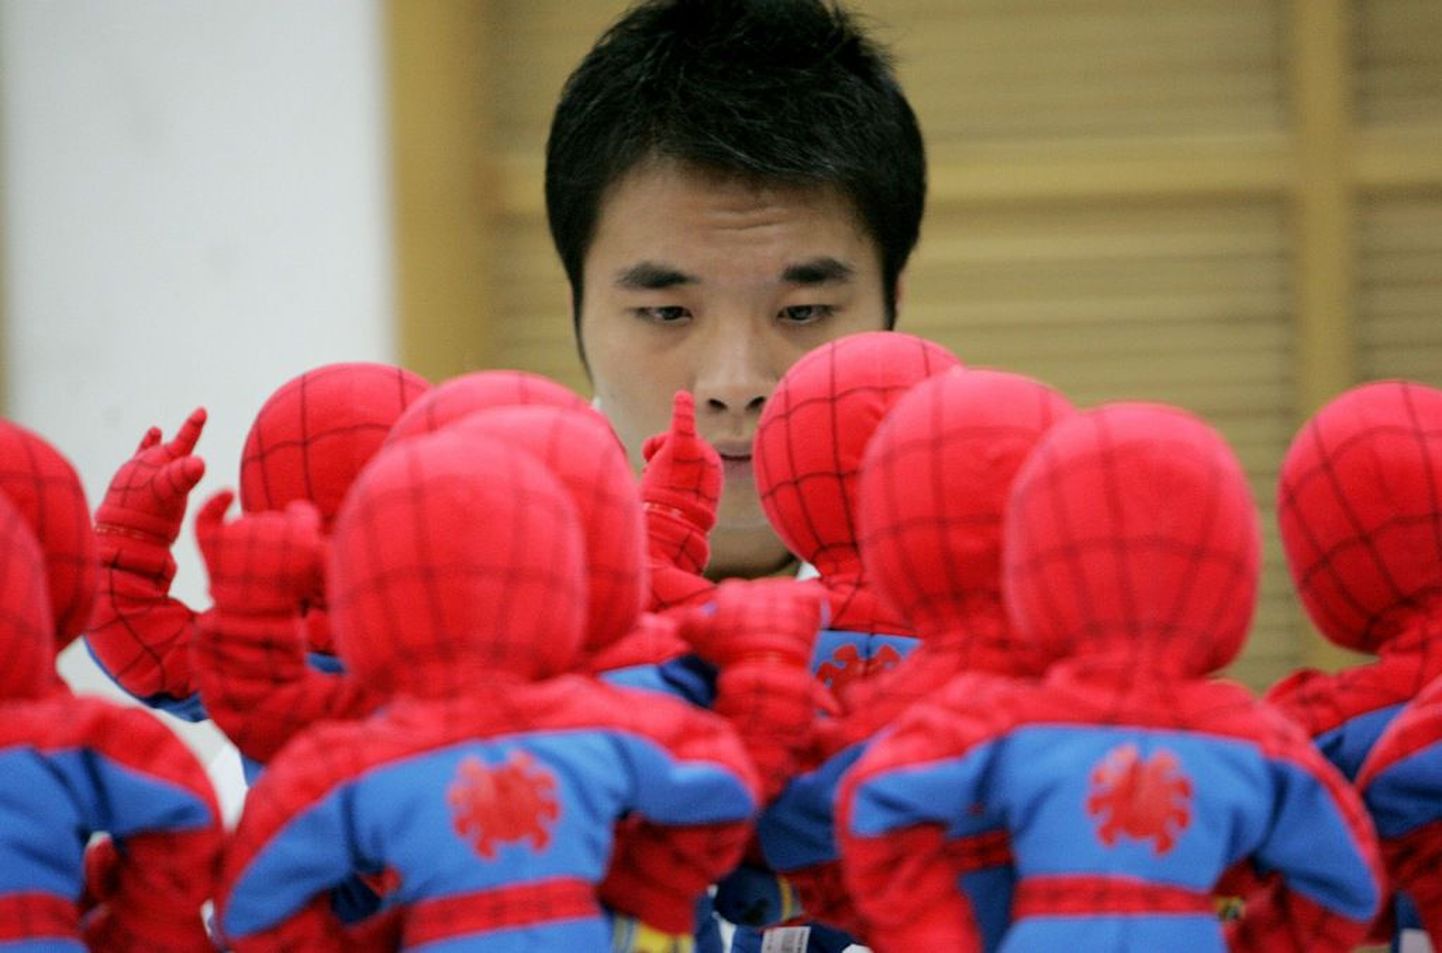 Hiina tööline kontrollimas Ämblikmehe nukke.